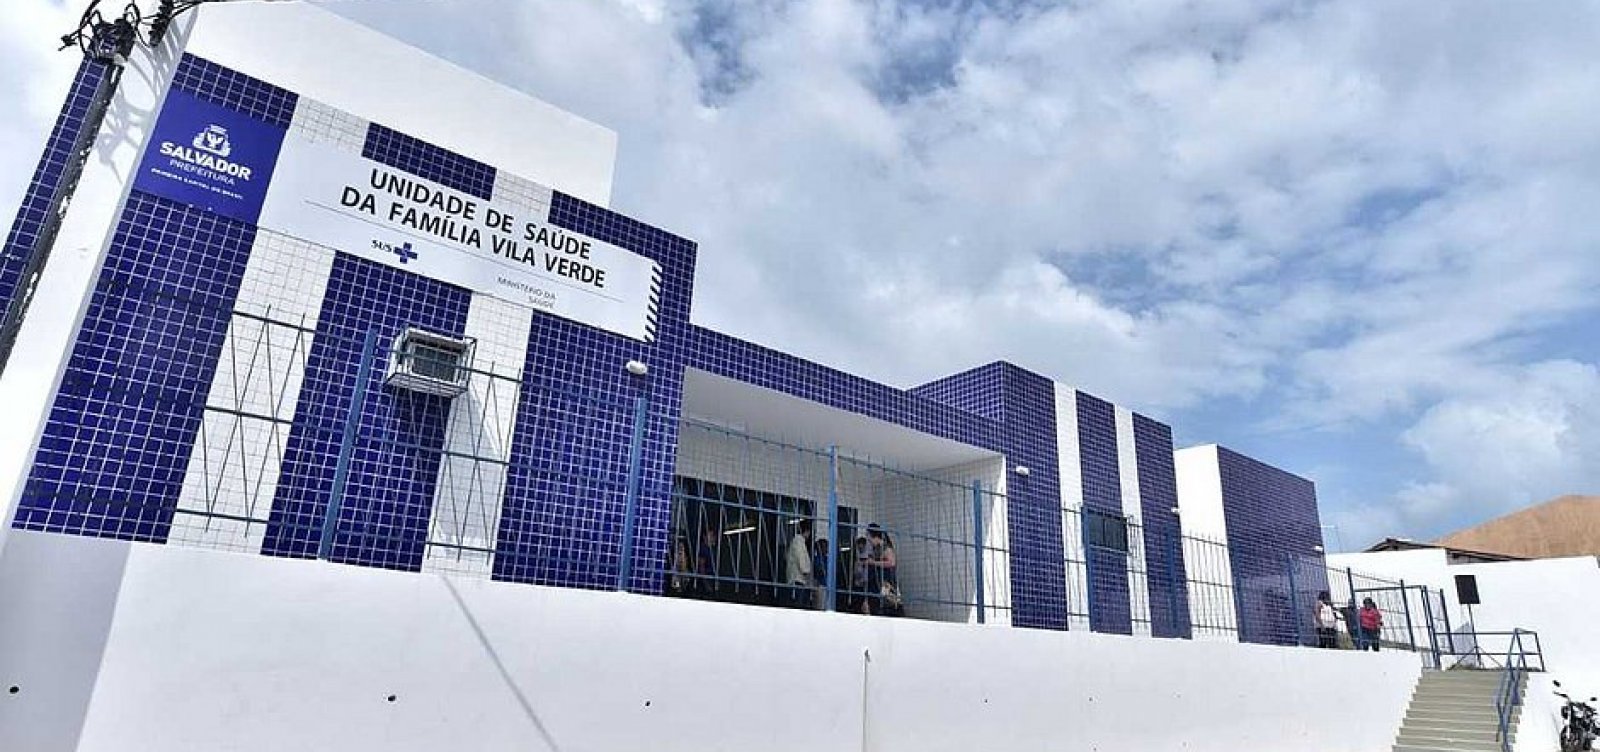 Prefeitura inaugura Unidade de Saúde da Família em Vila Verde